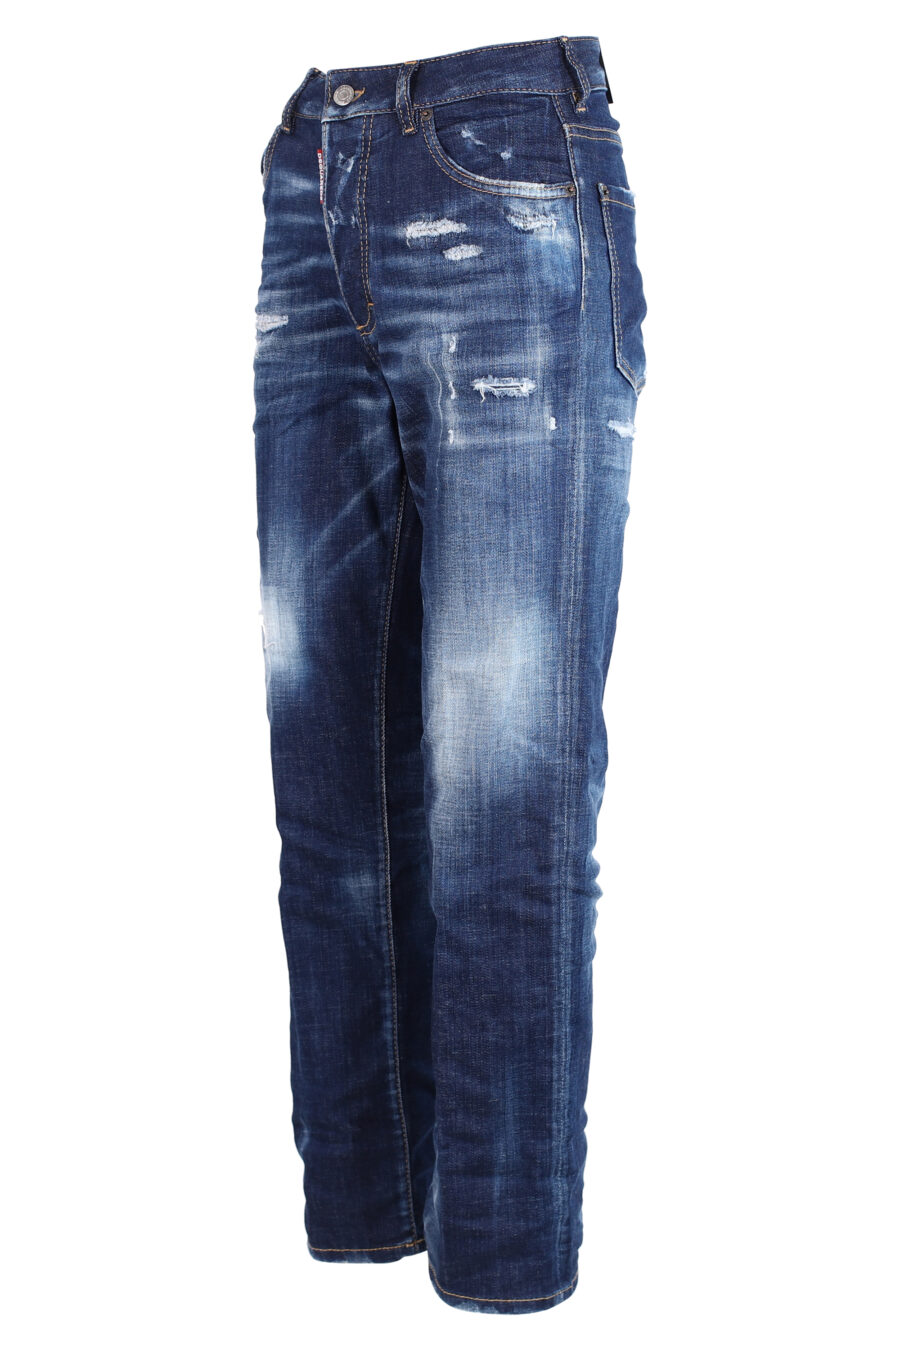 Pantalón vaquero "Boston Jean" azul - IMG 3305